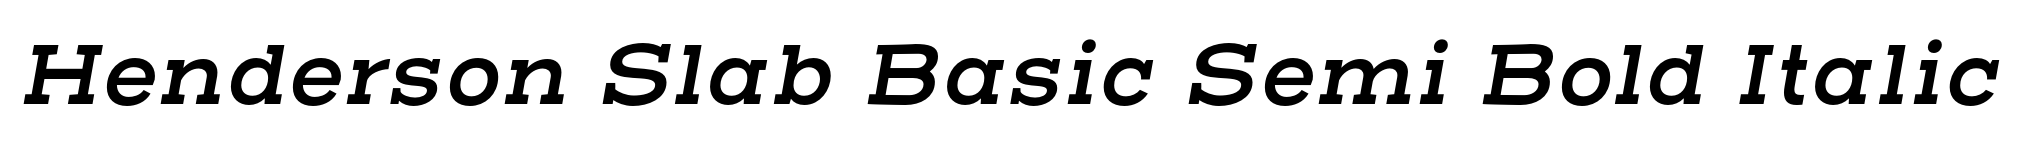 Henderson Slab Basic Semi Bold Italic image